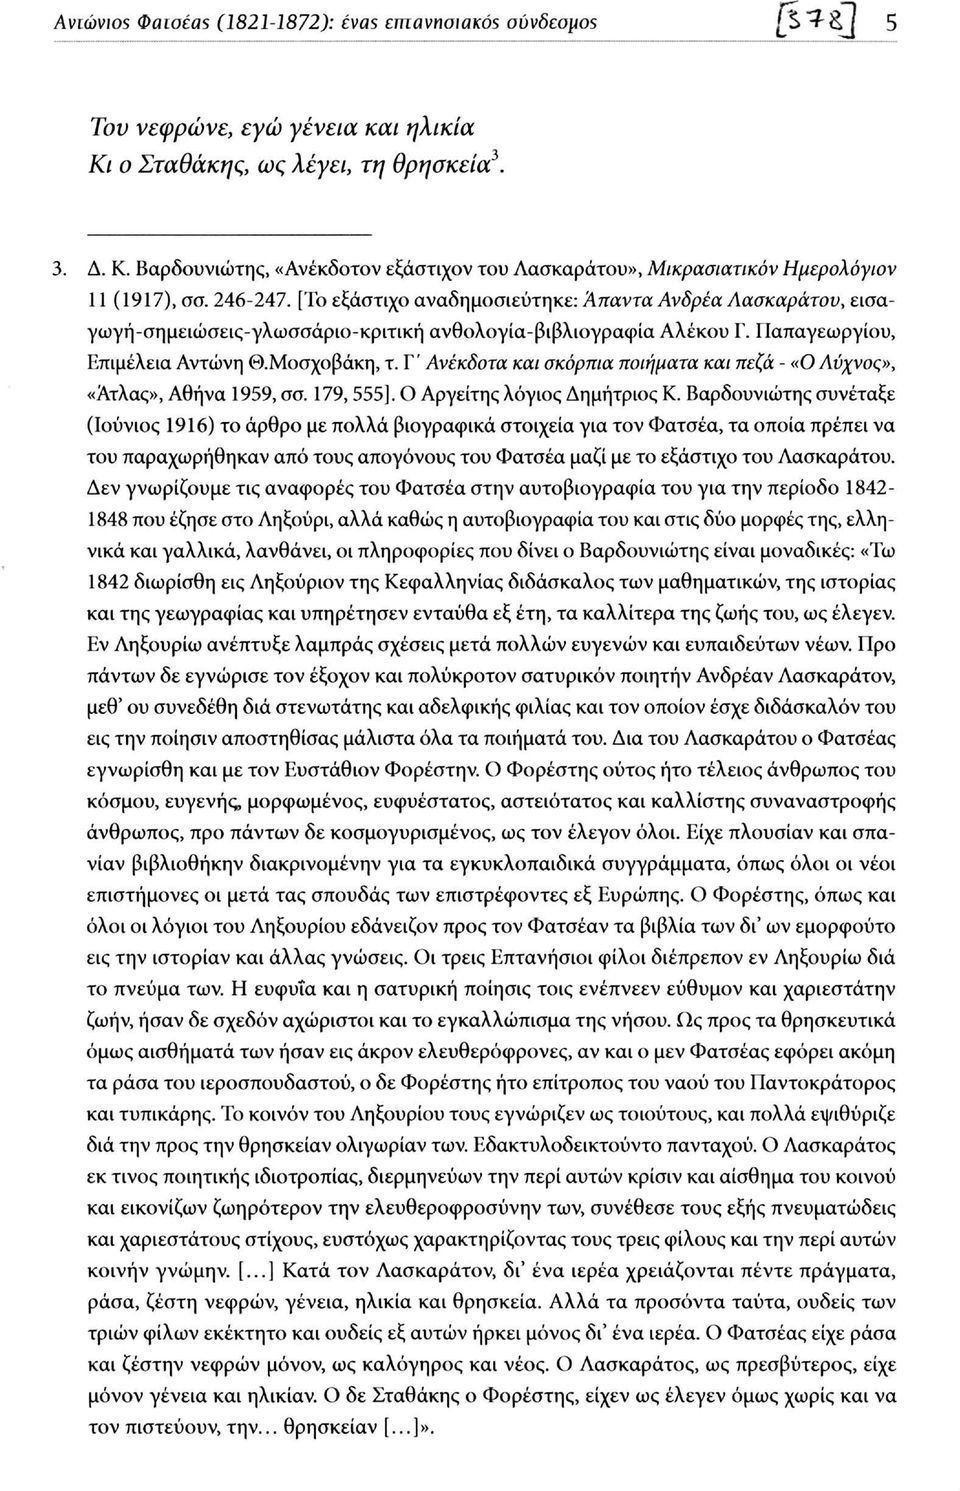 [Το εξάστιχο αναδημοσιεύτηκε: Άπαντα Ανδρέα Λασκαράτου, εισαγωγή-σημειώσεις-γλωσσάριο-κριτική ανθολογία-βιβλιογραφία Αλέκου Γ. Παπαγεωργίου, Επιμέλεια Αντώνη Θ.Μοσχοβάκη, τ.